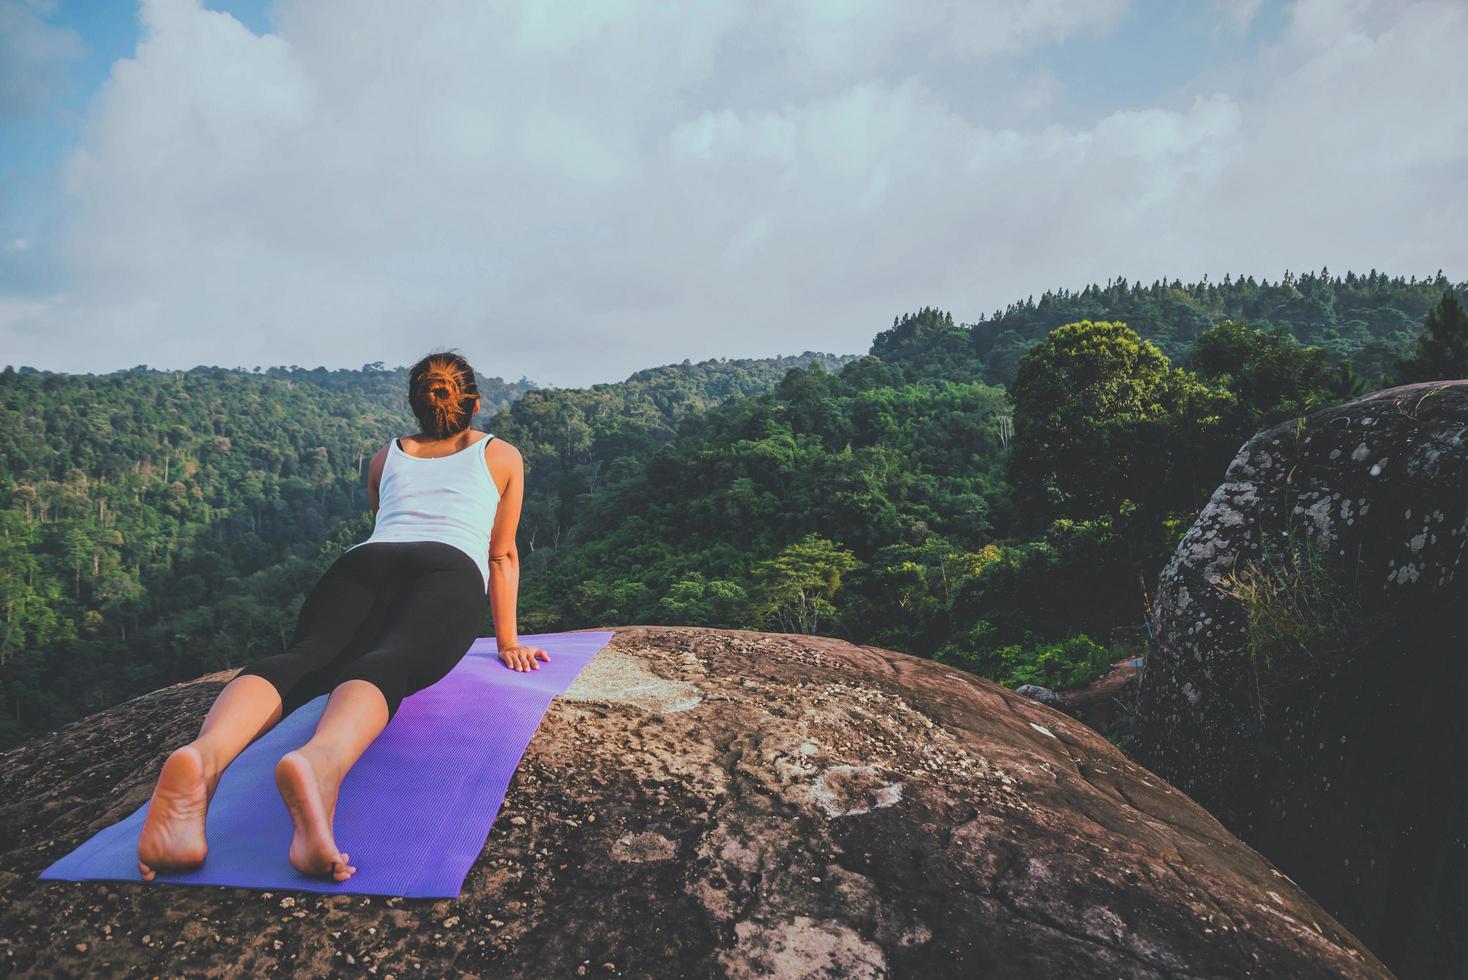 les femmes asiatiques se détendent pendant les vacances. jouer si yoga. sur la falaise rocheuse de la montagne. nature des forêts de montagne en thaïlande photo